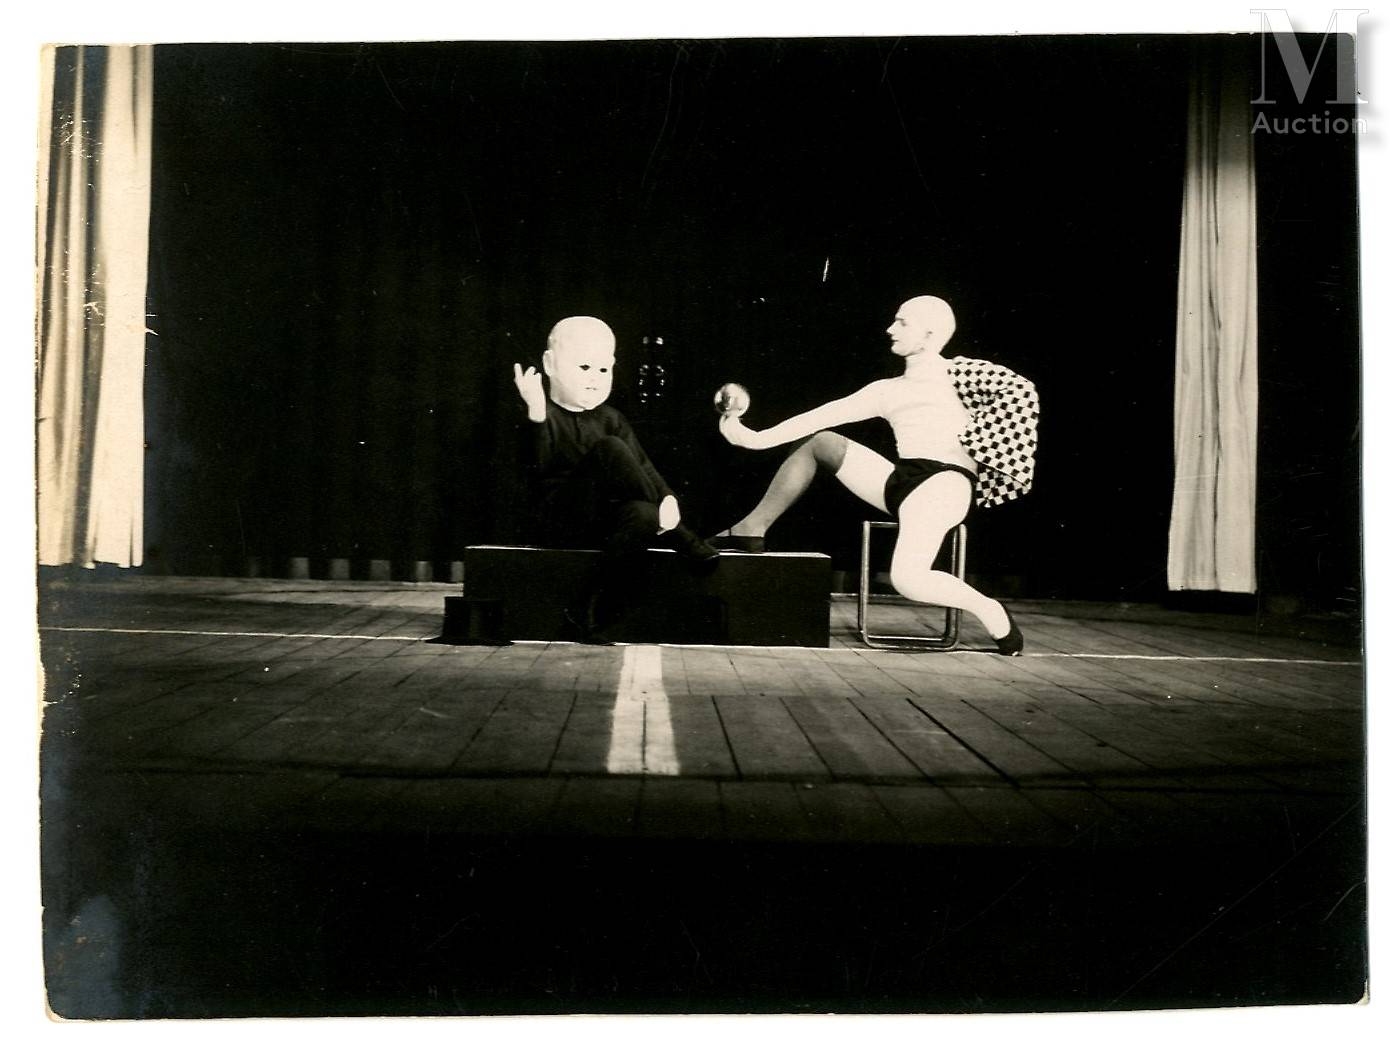 Improvisation sur la scène by T. Lux Feininger, c. 1927-1928